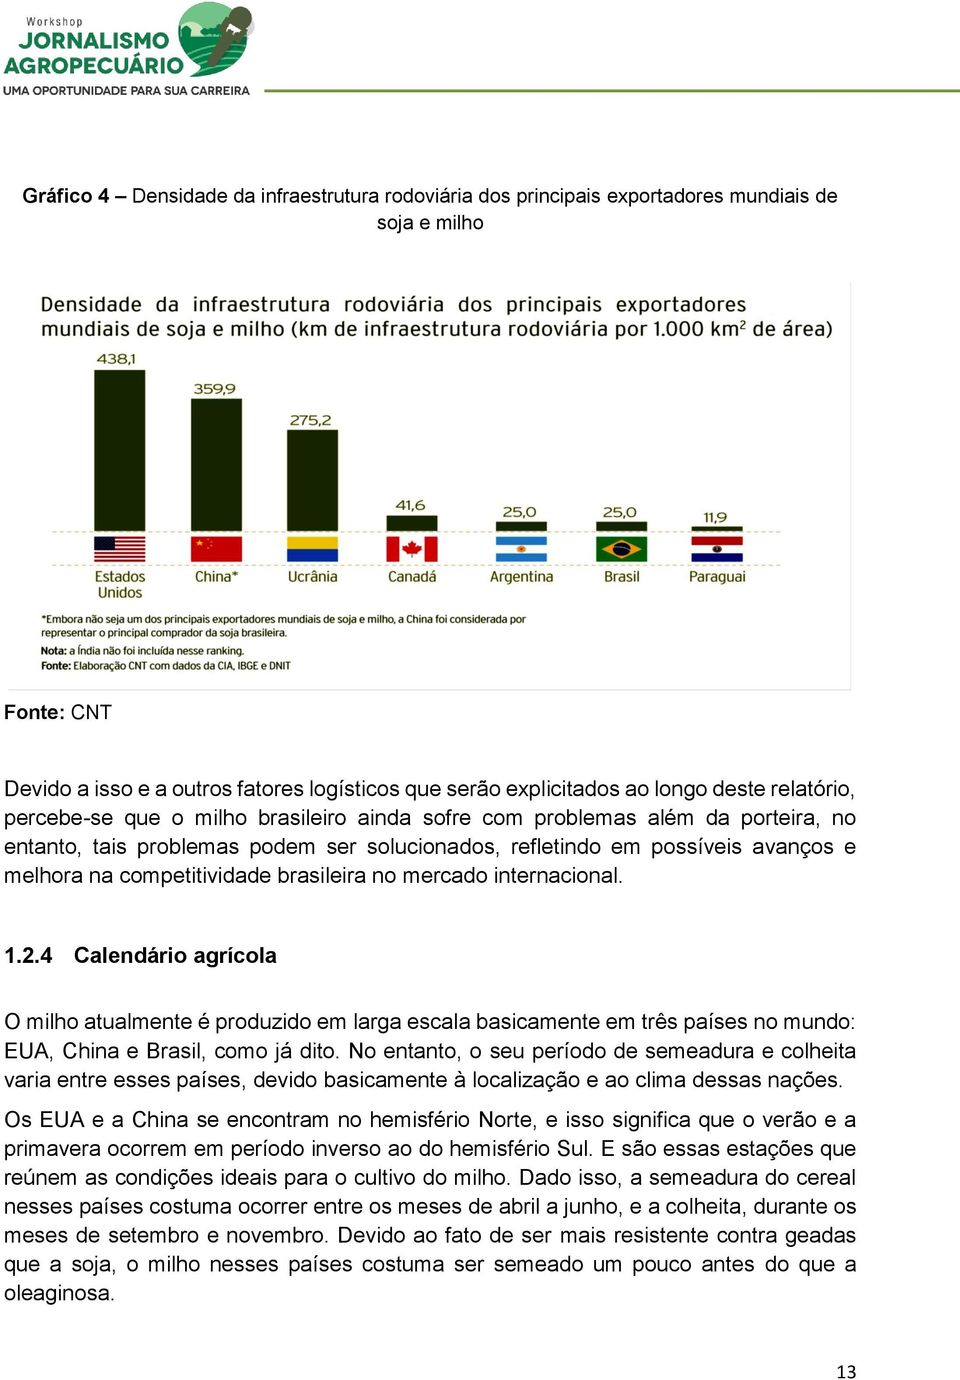 competitividade brasileira no mercado internacional. 1.2.4 Calendário agrícola O milho atualmente é produzido em larga escala basicamente em três países no mundo: EUA, China e Brasil, como já dito.